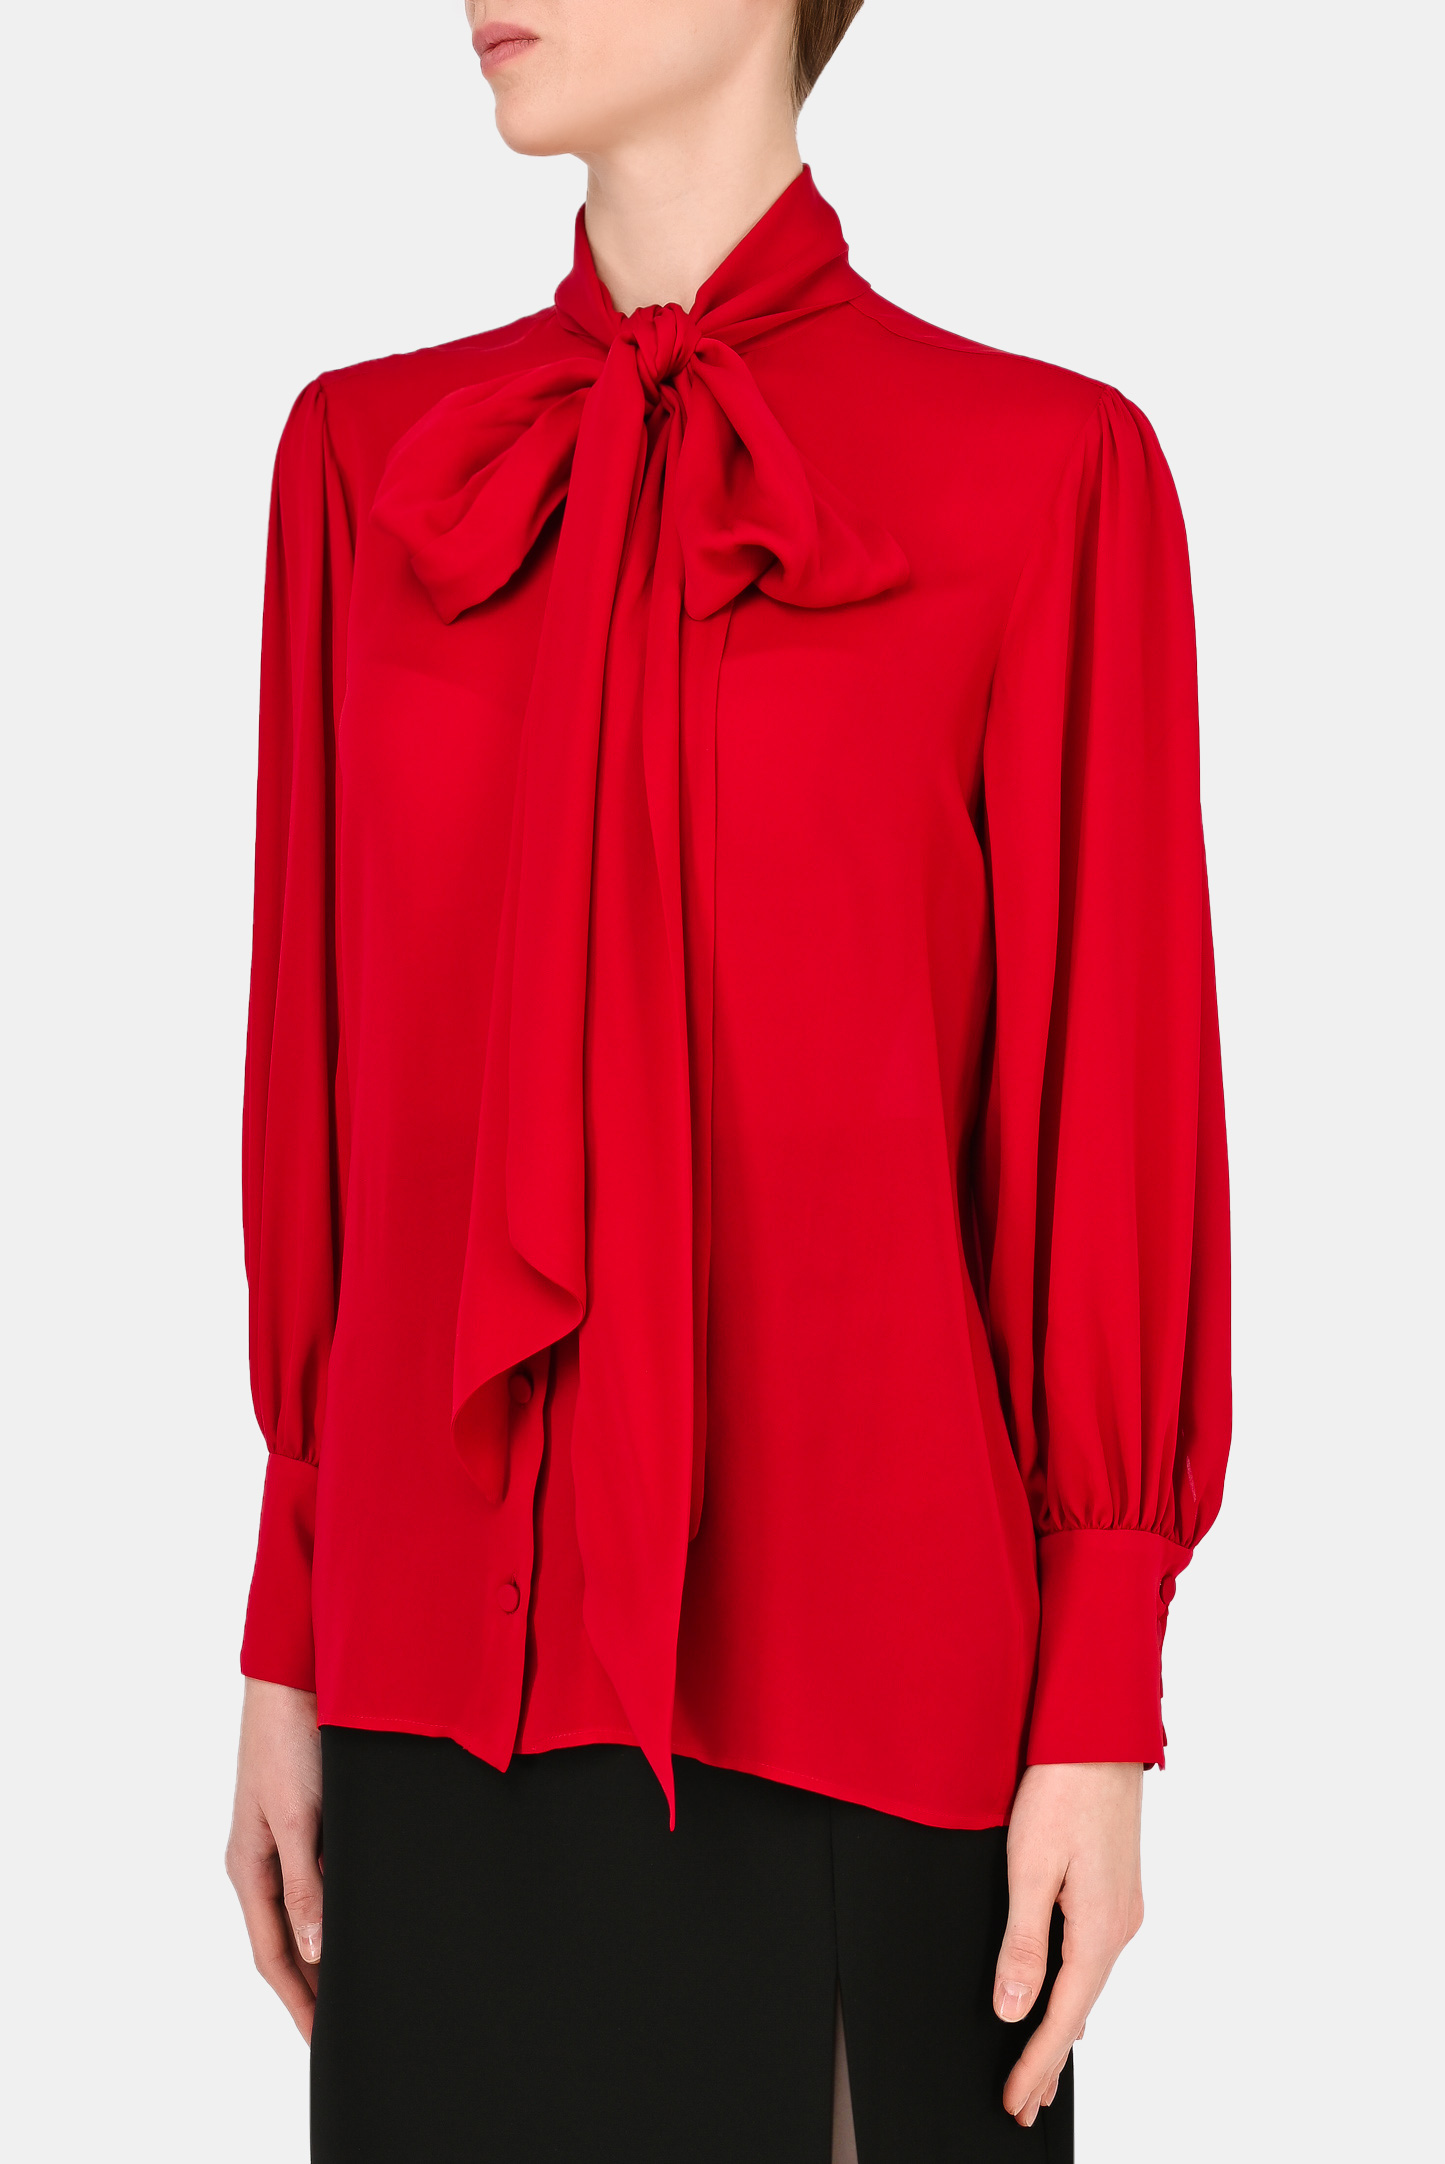 Блуза GUCCI 652112 ZHS18, цвет: Красный, Женский